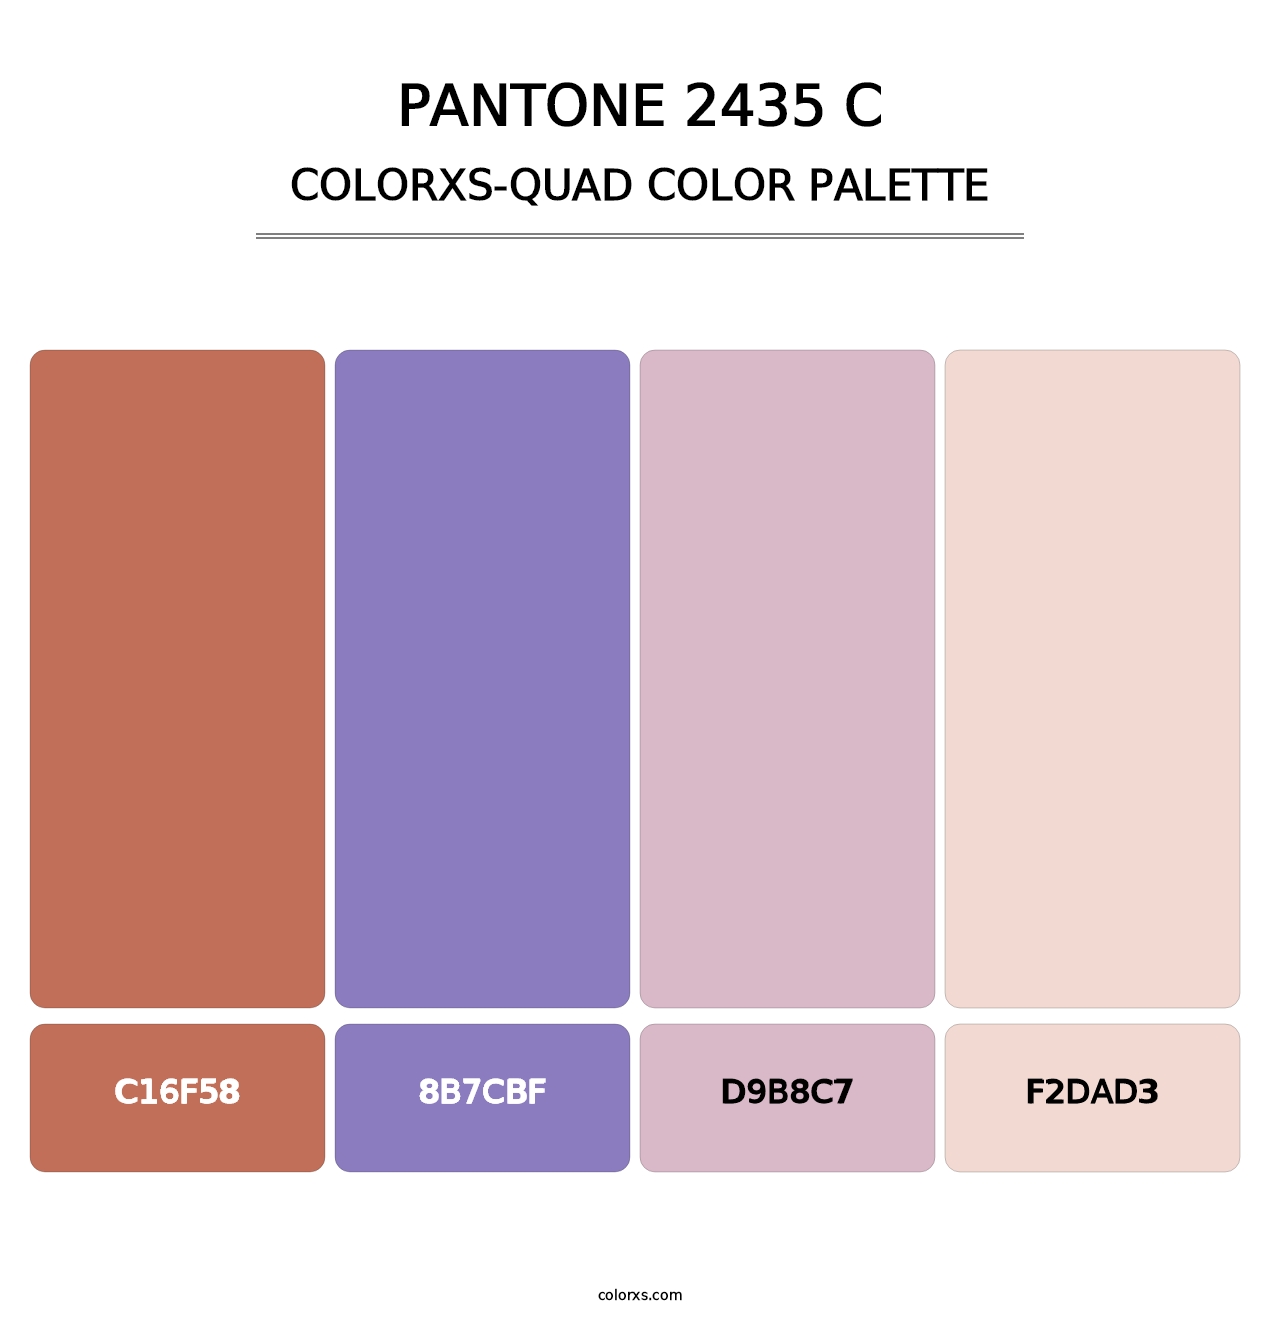 PANTONE 2435 C - Colorxs Quad Palette